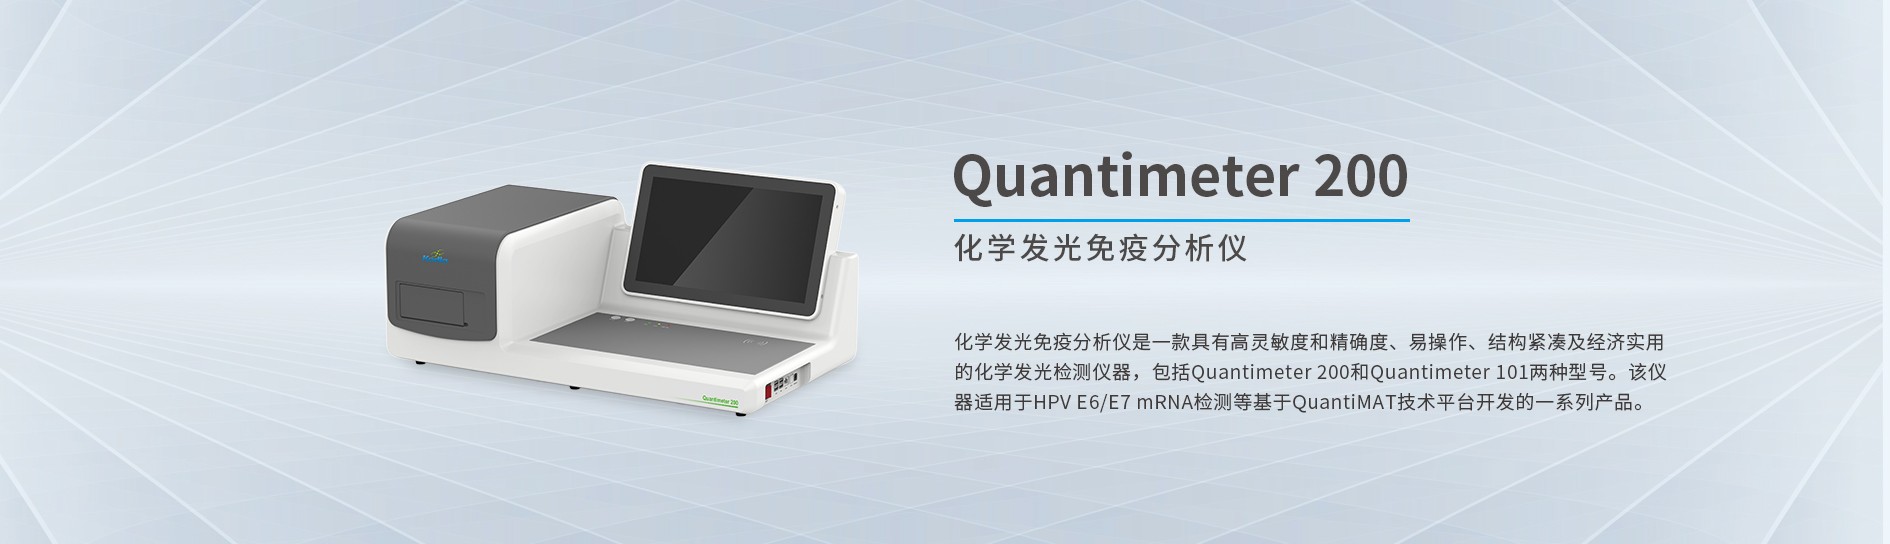 化学发光免疫分析仪Quantimeter 200